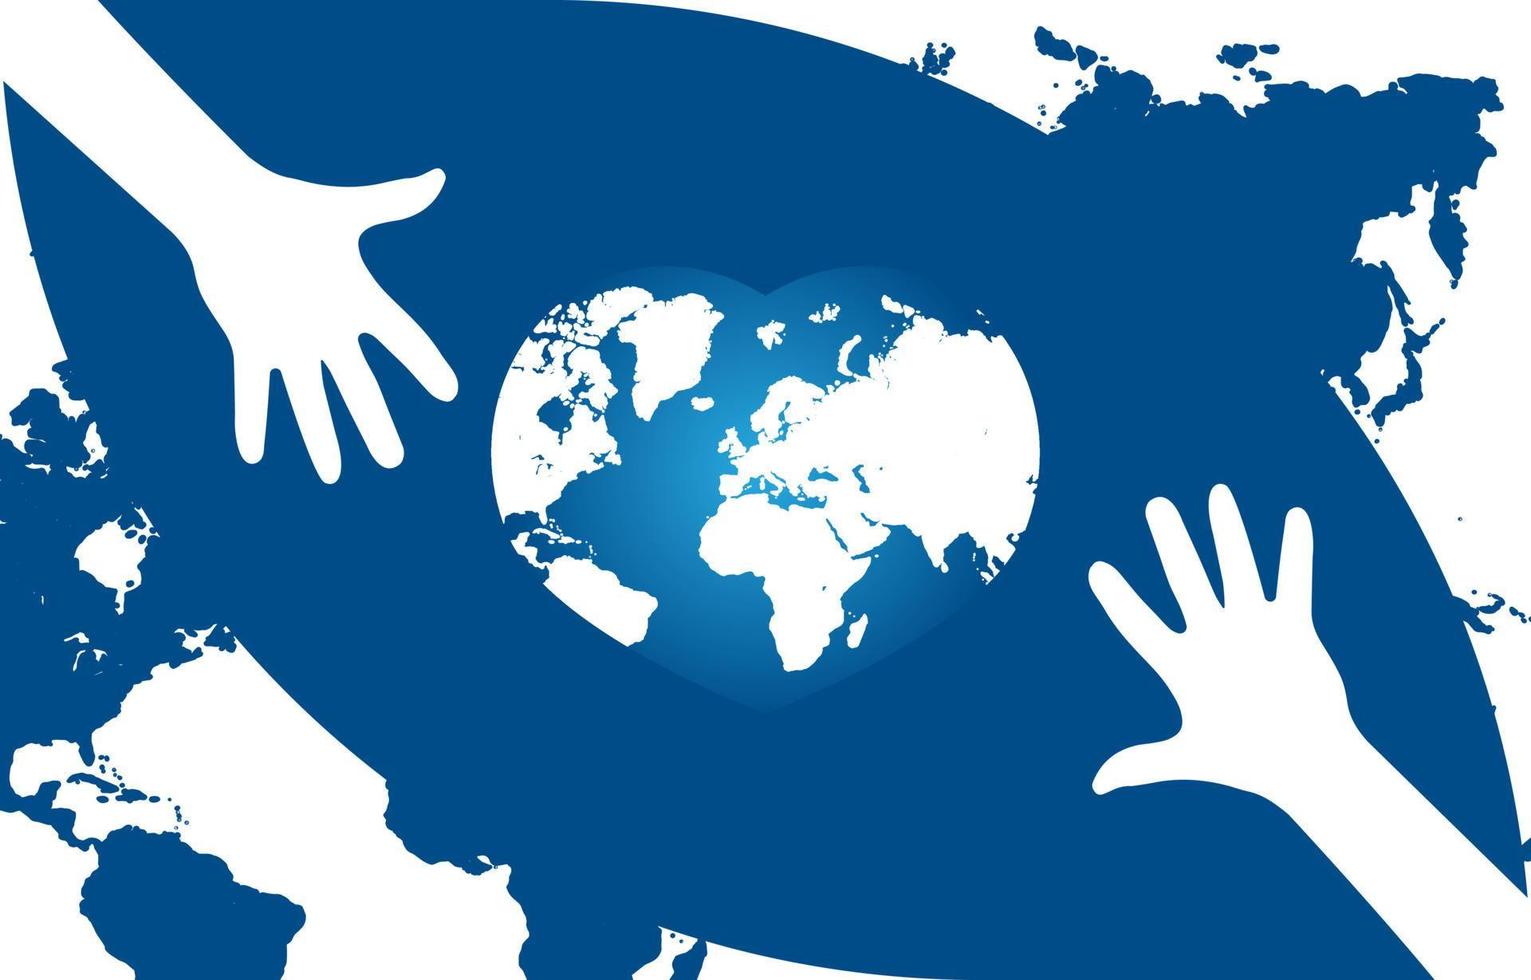 illustration à plat de la journée mondiale de l'aide humanitaire avec modèle de globe, conception adaptée aux affiches, arrière-plans, cartes de voeux, thème de la journée mondiale de l'aide humanitaire vecteur